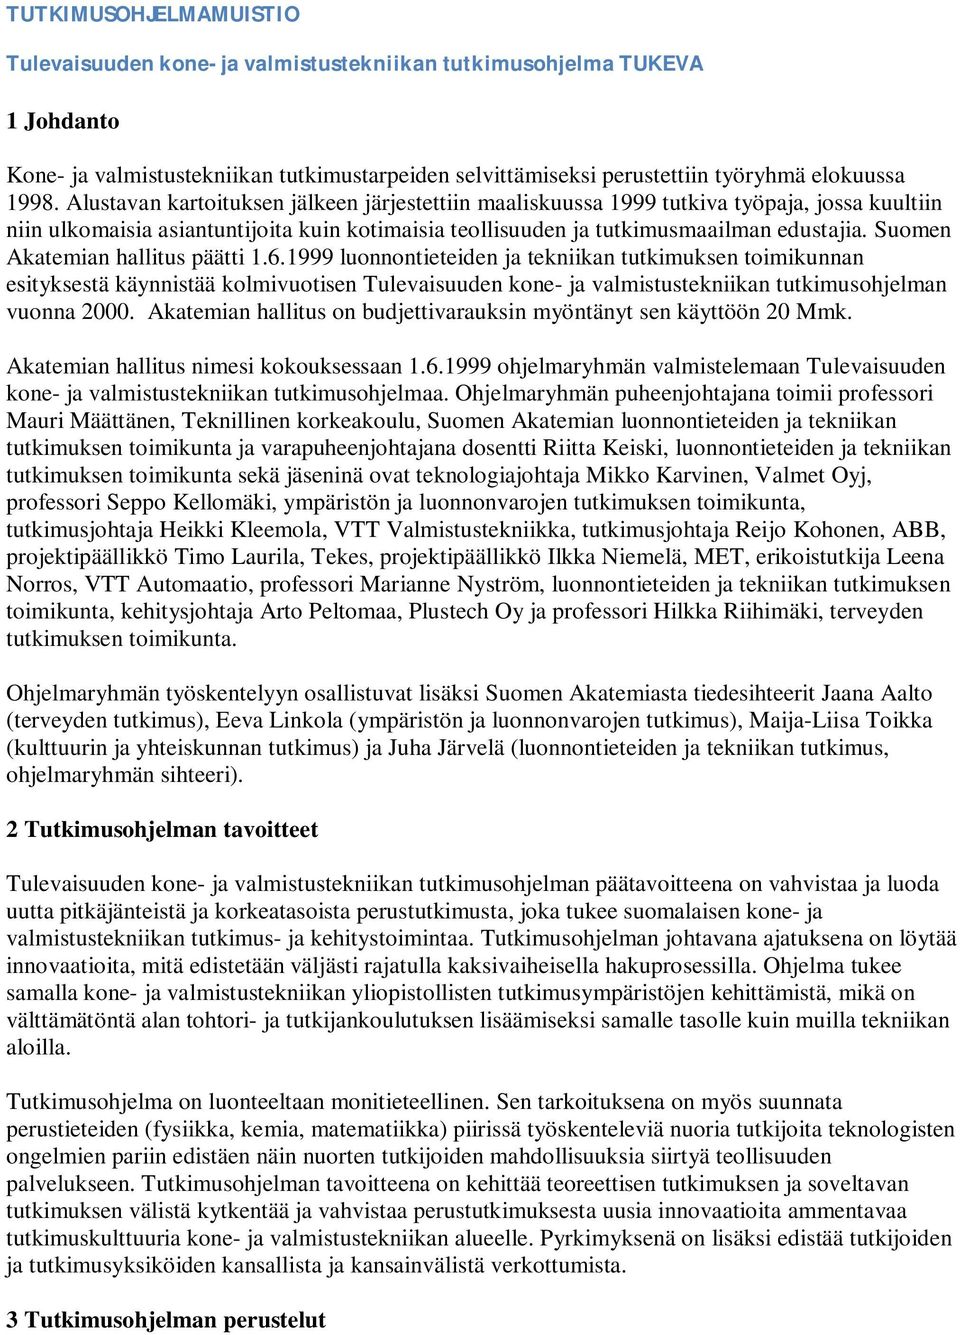 Suomen Akatemian hallitus päätti 1.6.